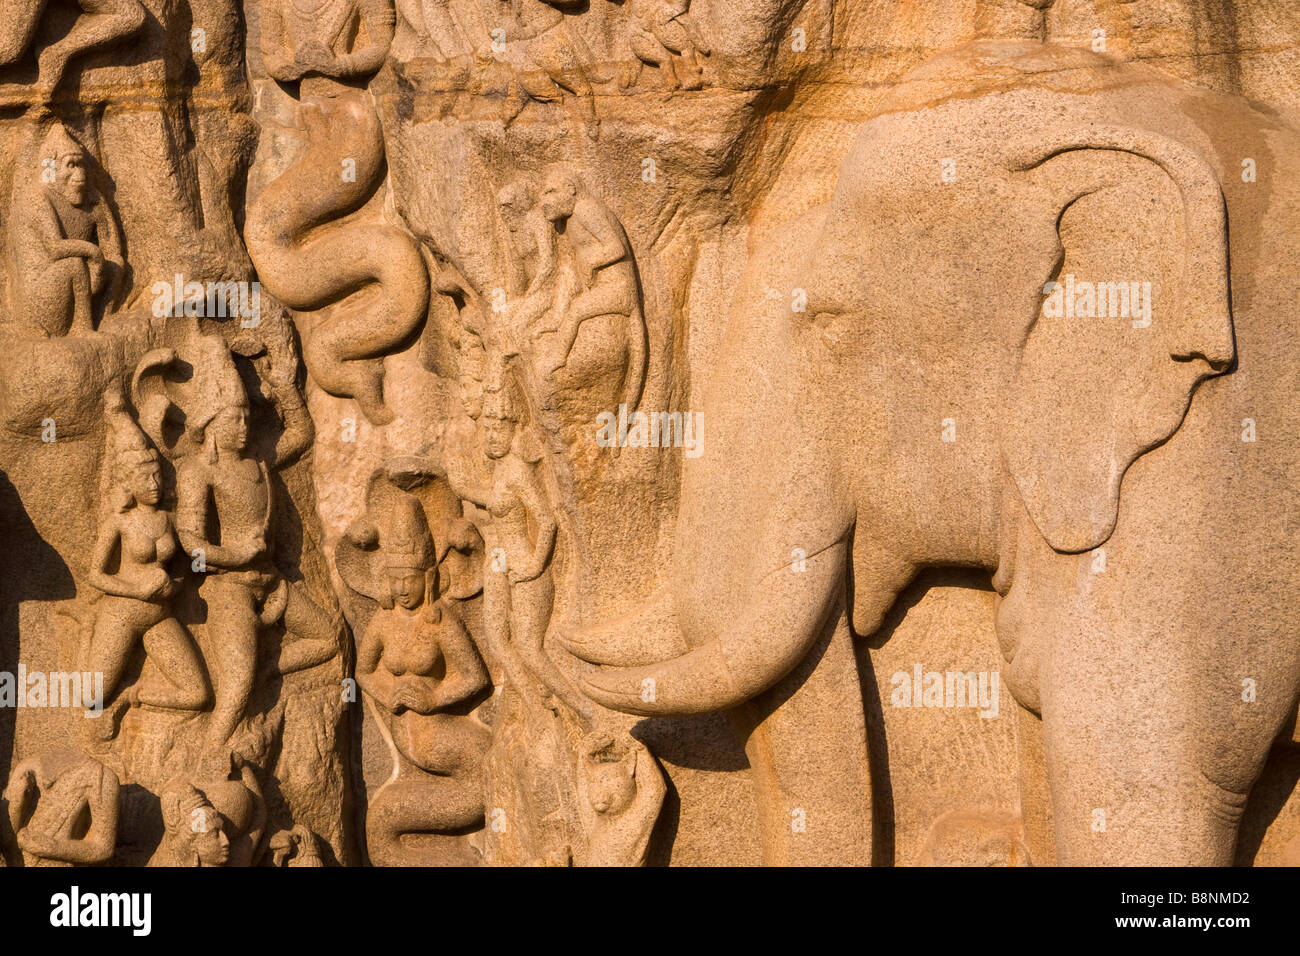 India Tamil Nadu Mamallapuram Arjunas penitenza rock indù carving dettaglio di riparazione da gange nagas Foto Stock